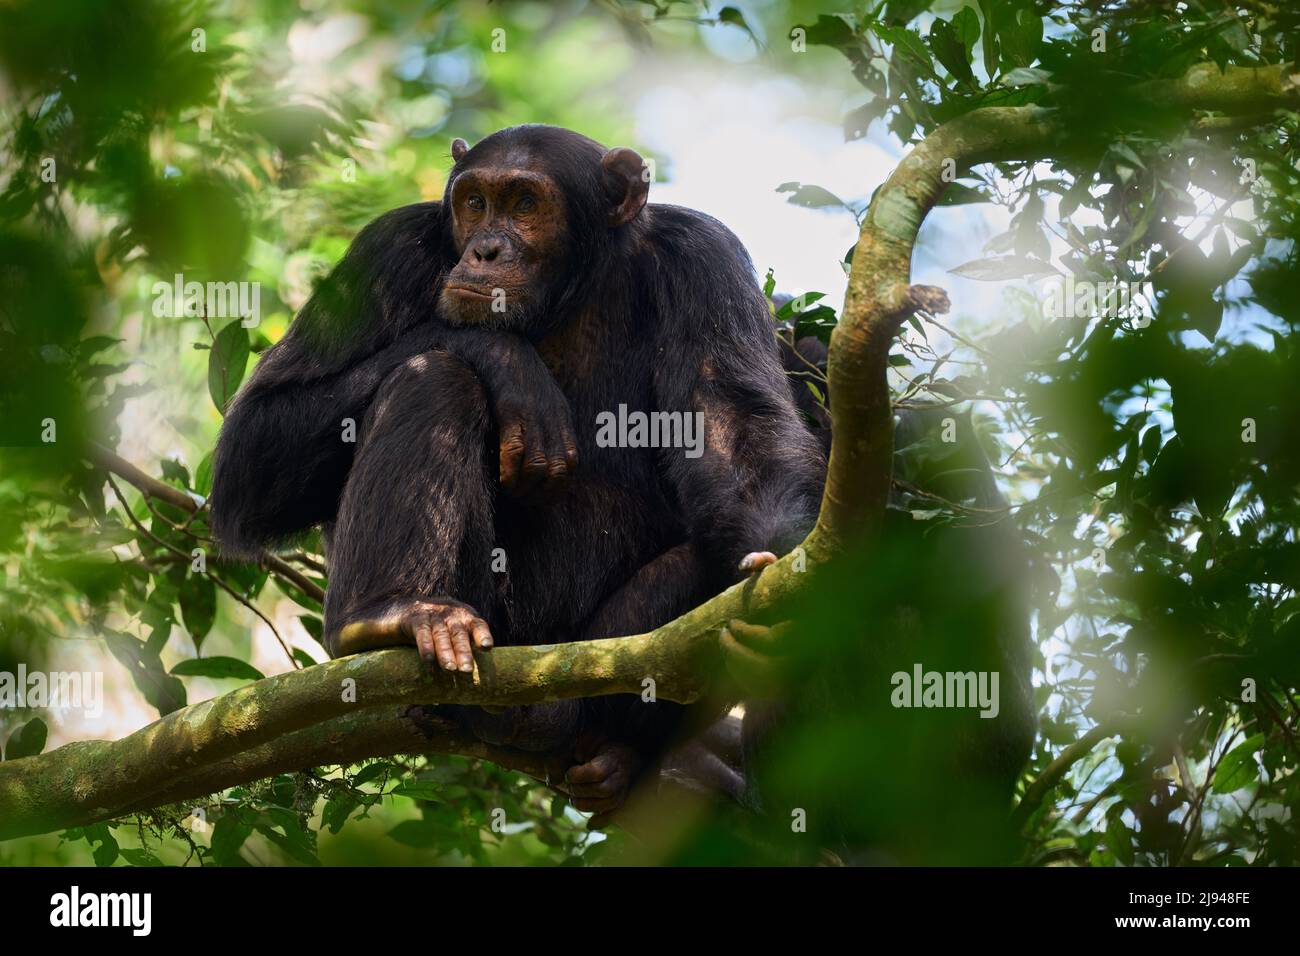 Wildlife Uganda. Chimpanzee, Pan troglodytes, on the tree in Kibale National Park, Uganda, dark forest. Black monkey in the nature, Uganda in Africa. Stock Photo